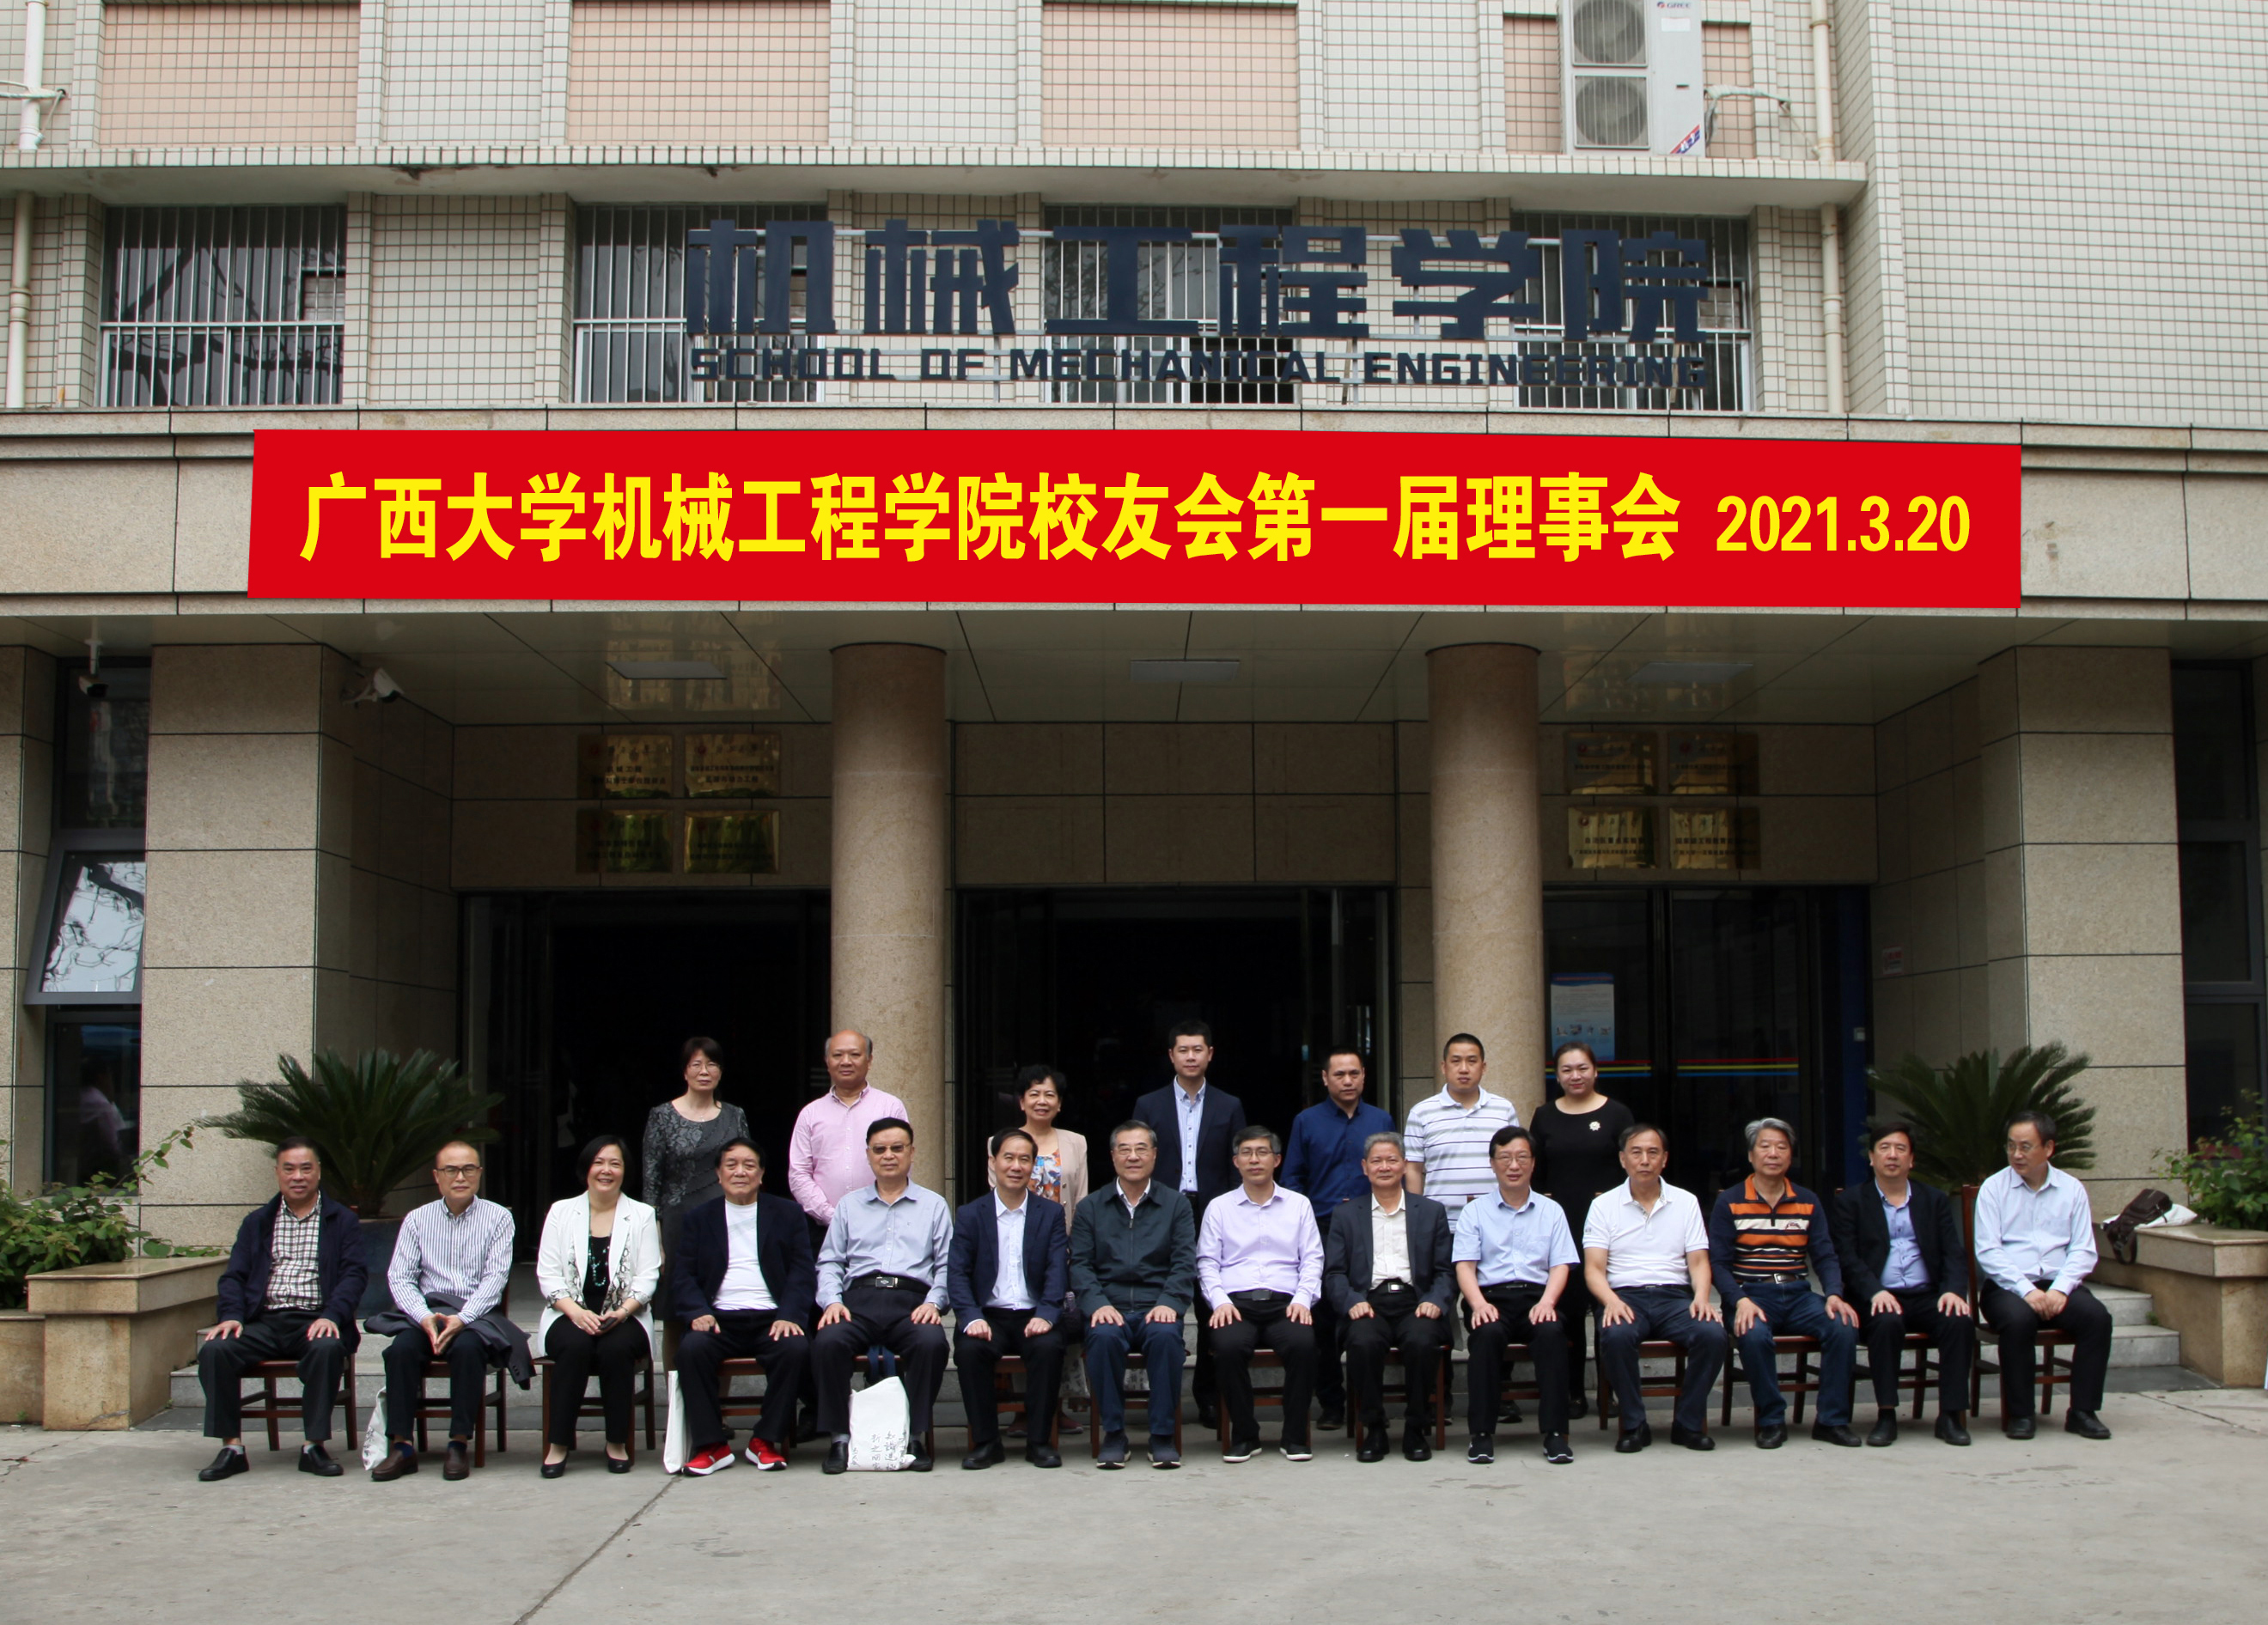 广西大学机械工程学院校友会正式成立